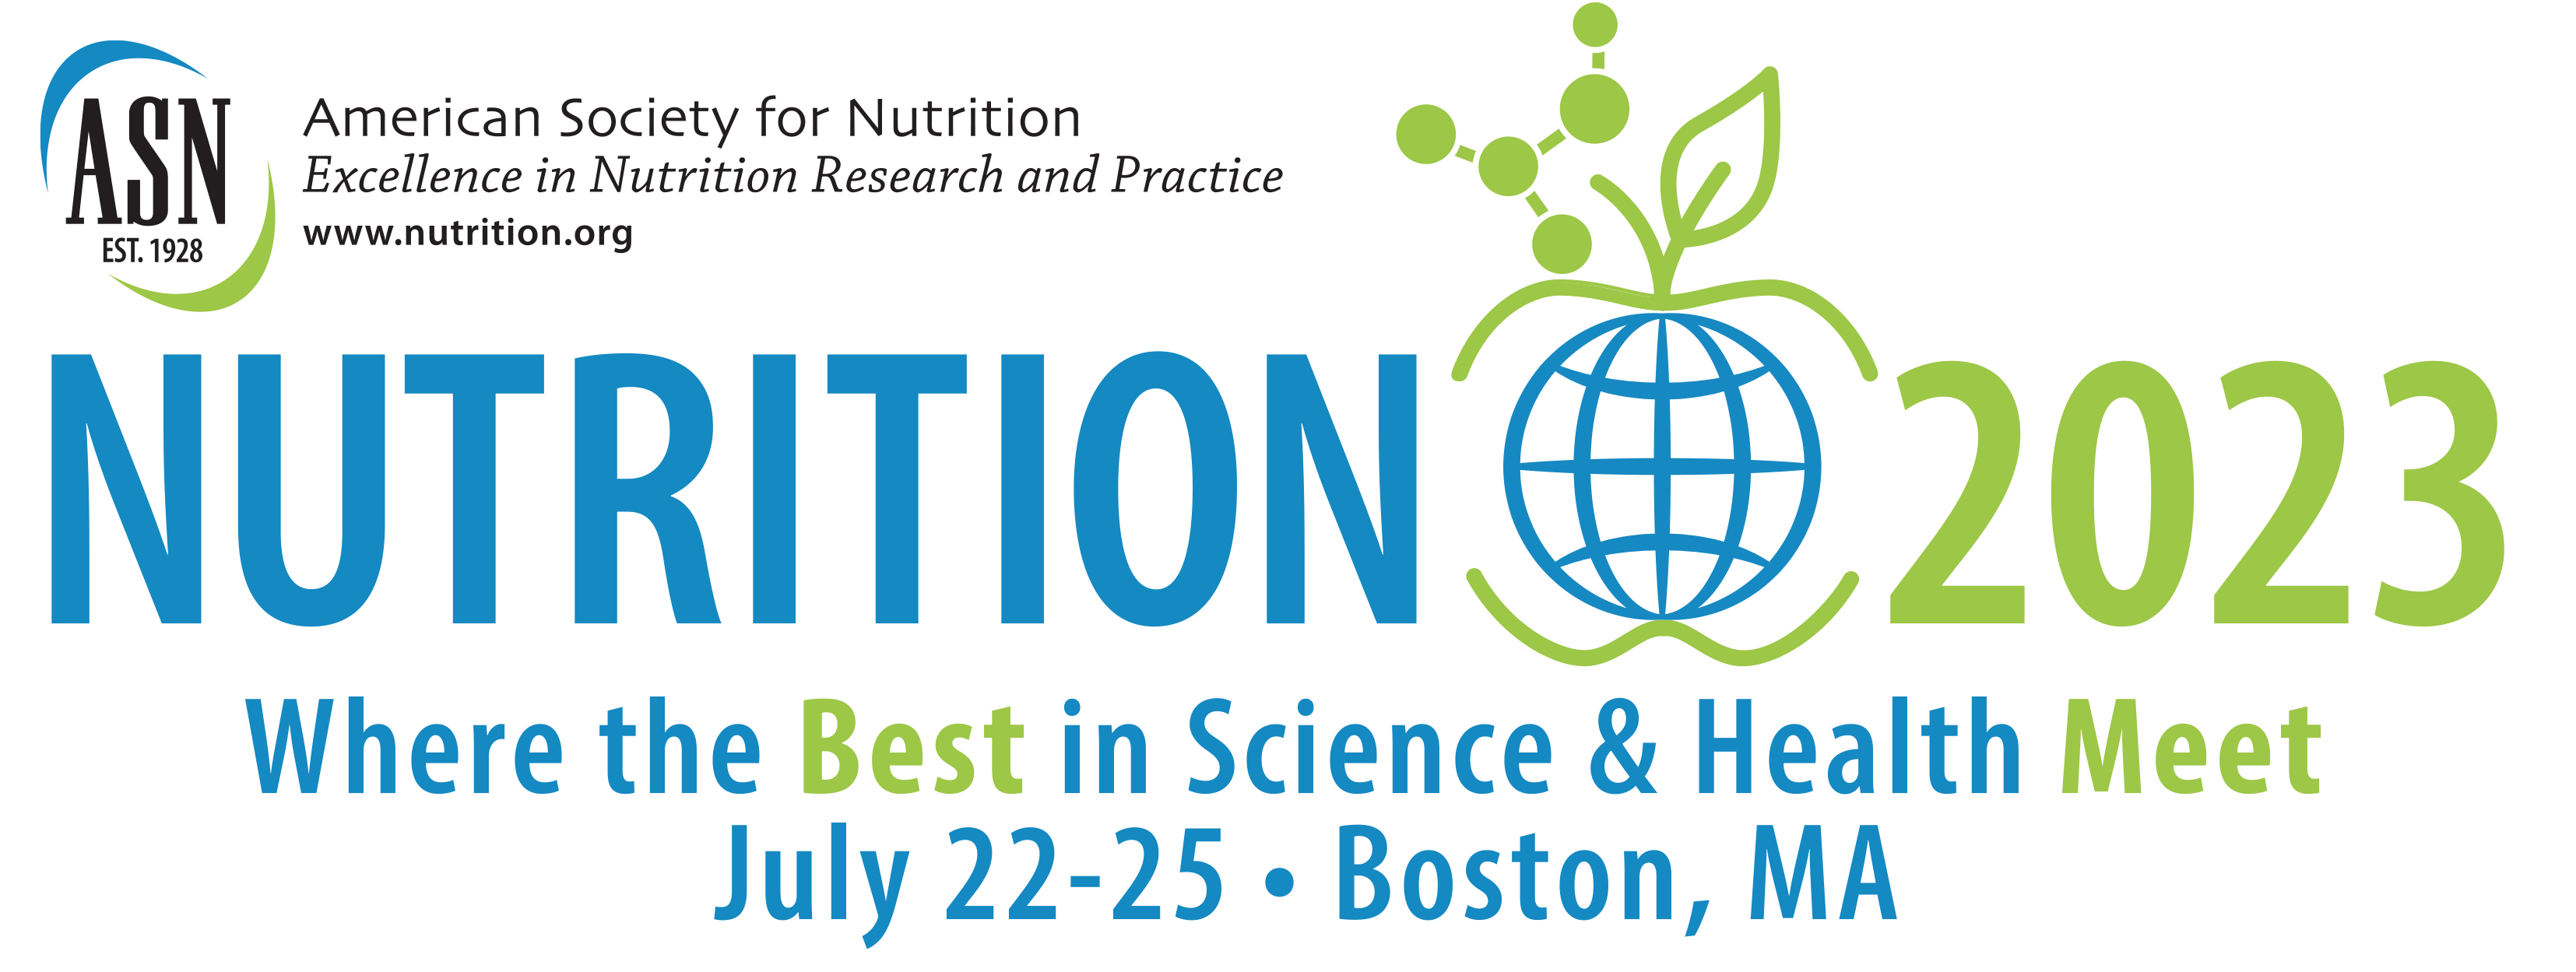 NUTRITION 2023 Registration Banner & Link